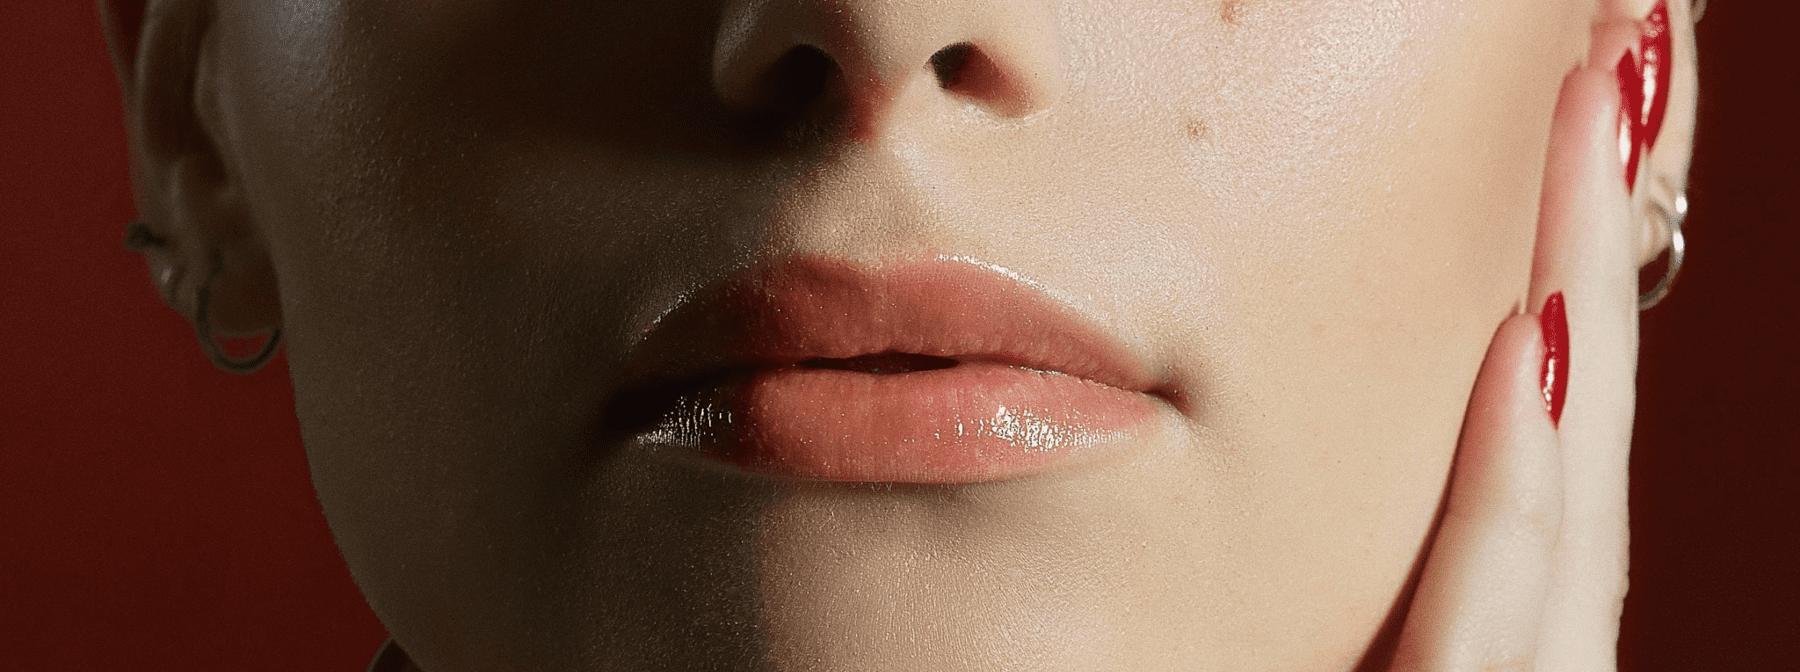 How to Keep Lips Soft and Moisturized